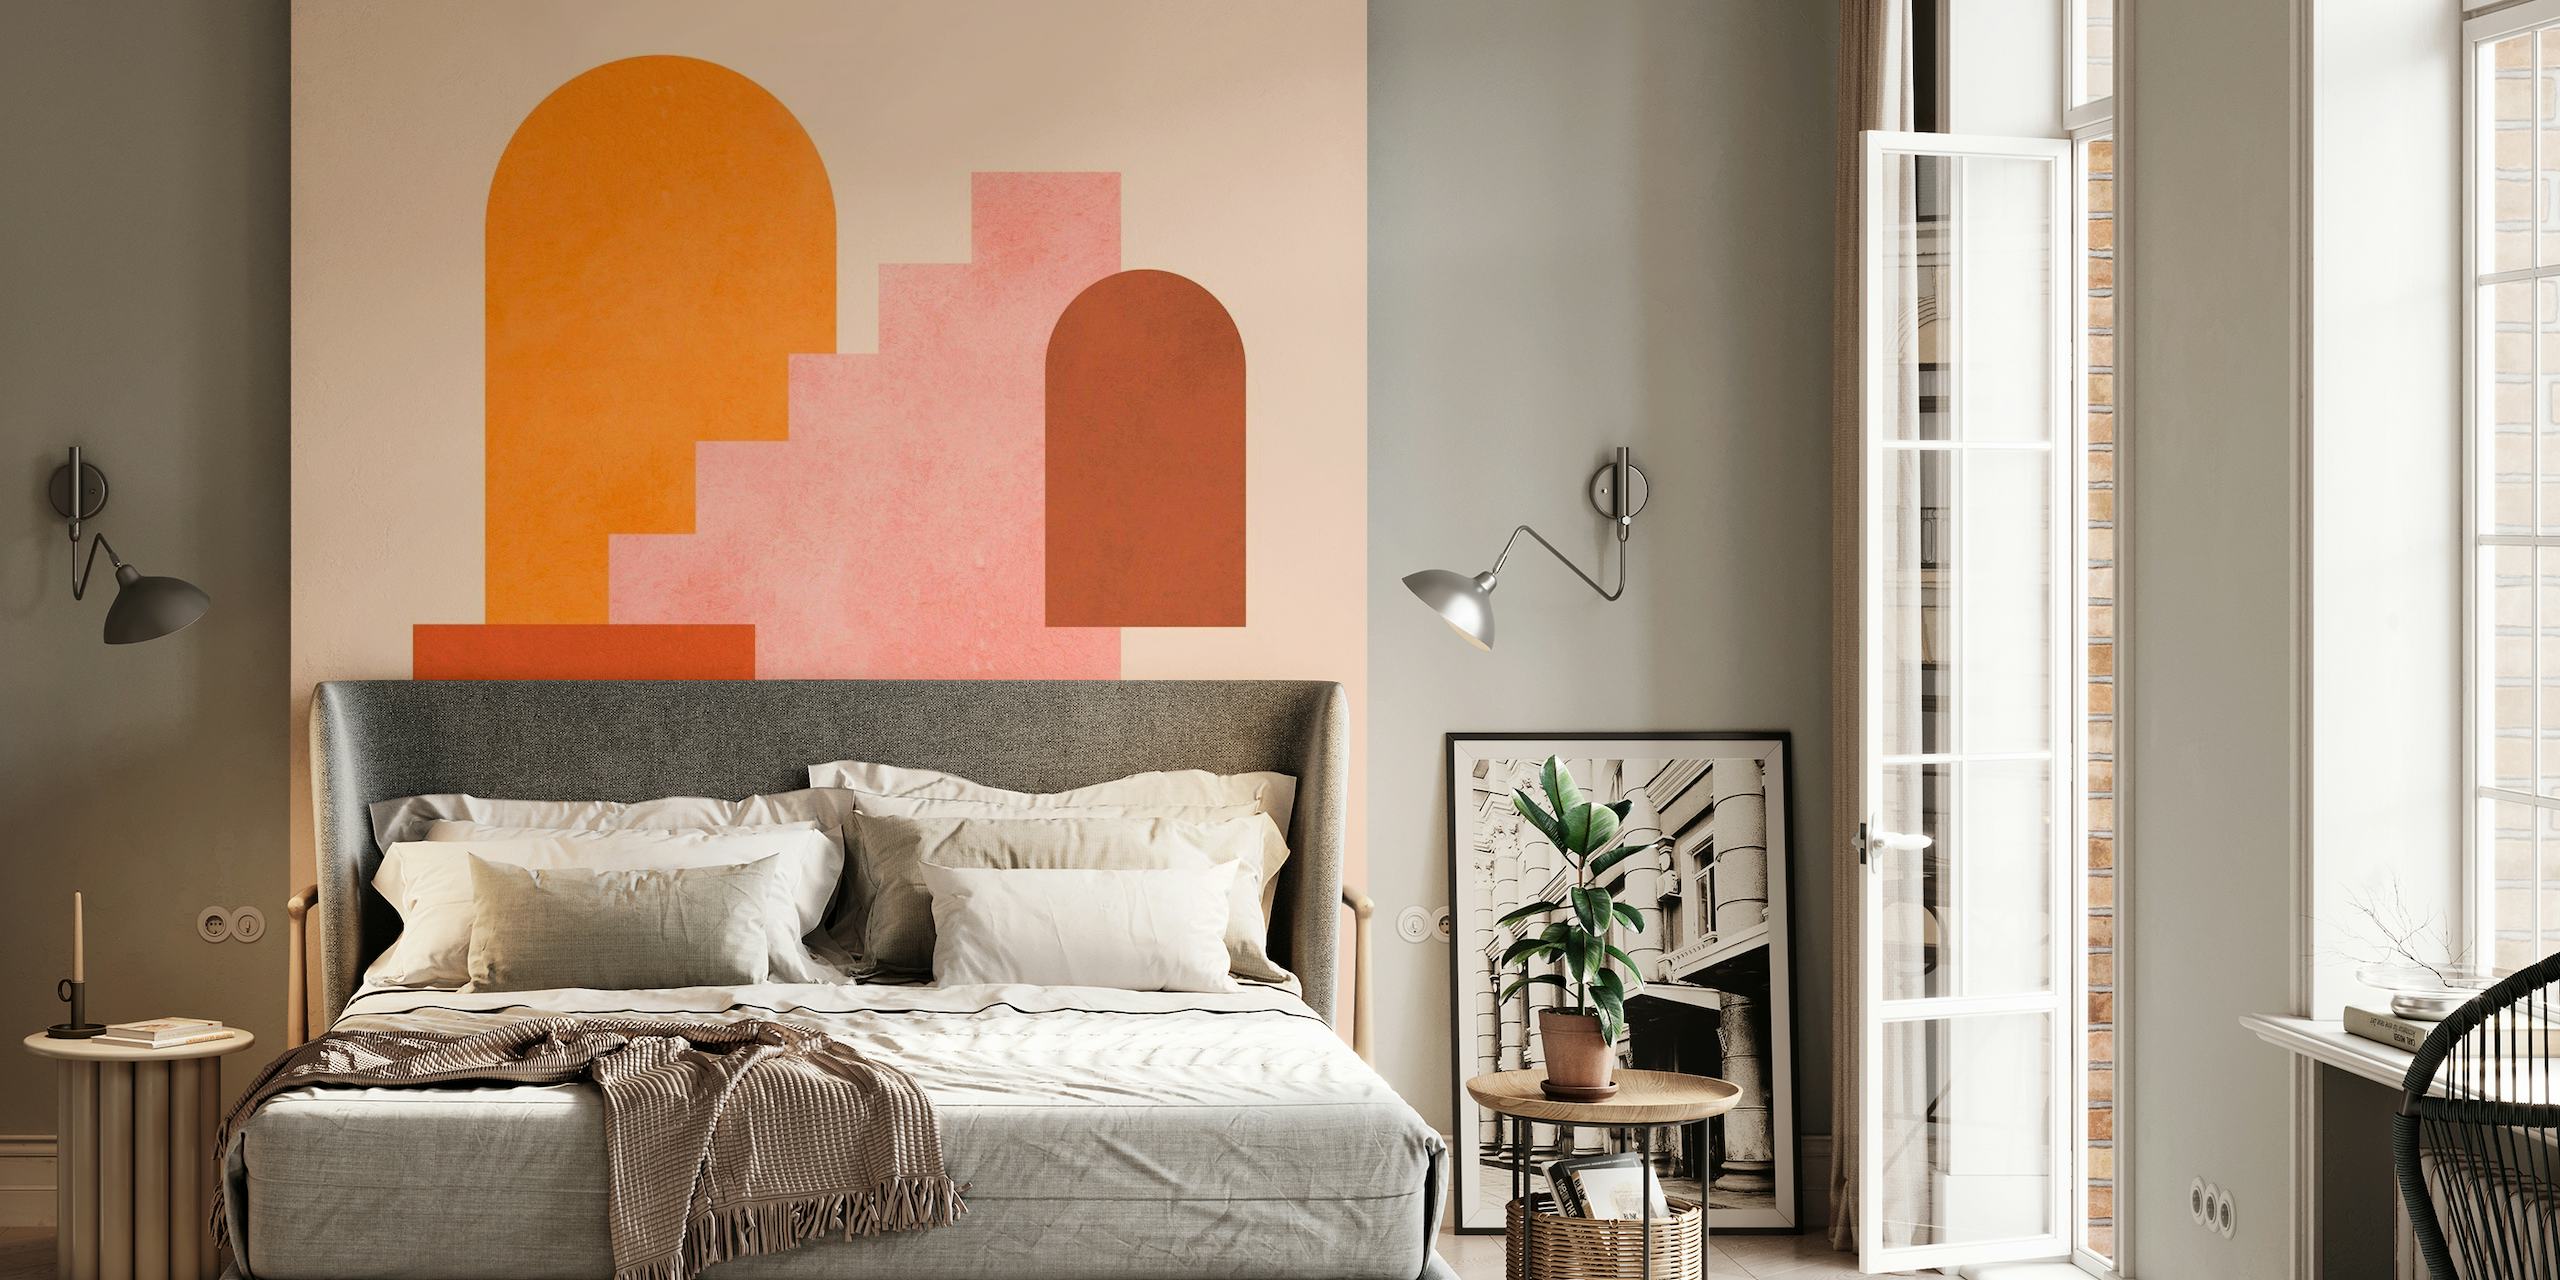 Muurschildering met abstracte geometrische vormen in oranje, roze en terracotta tinten.